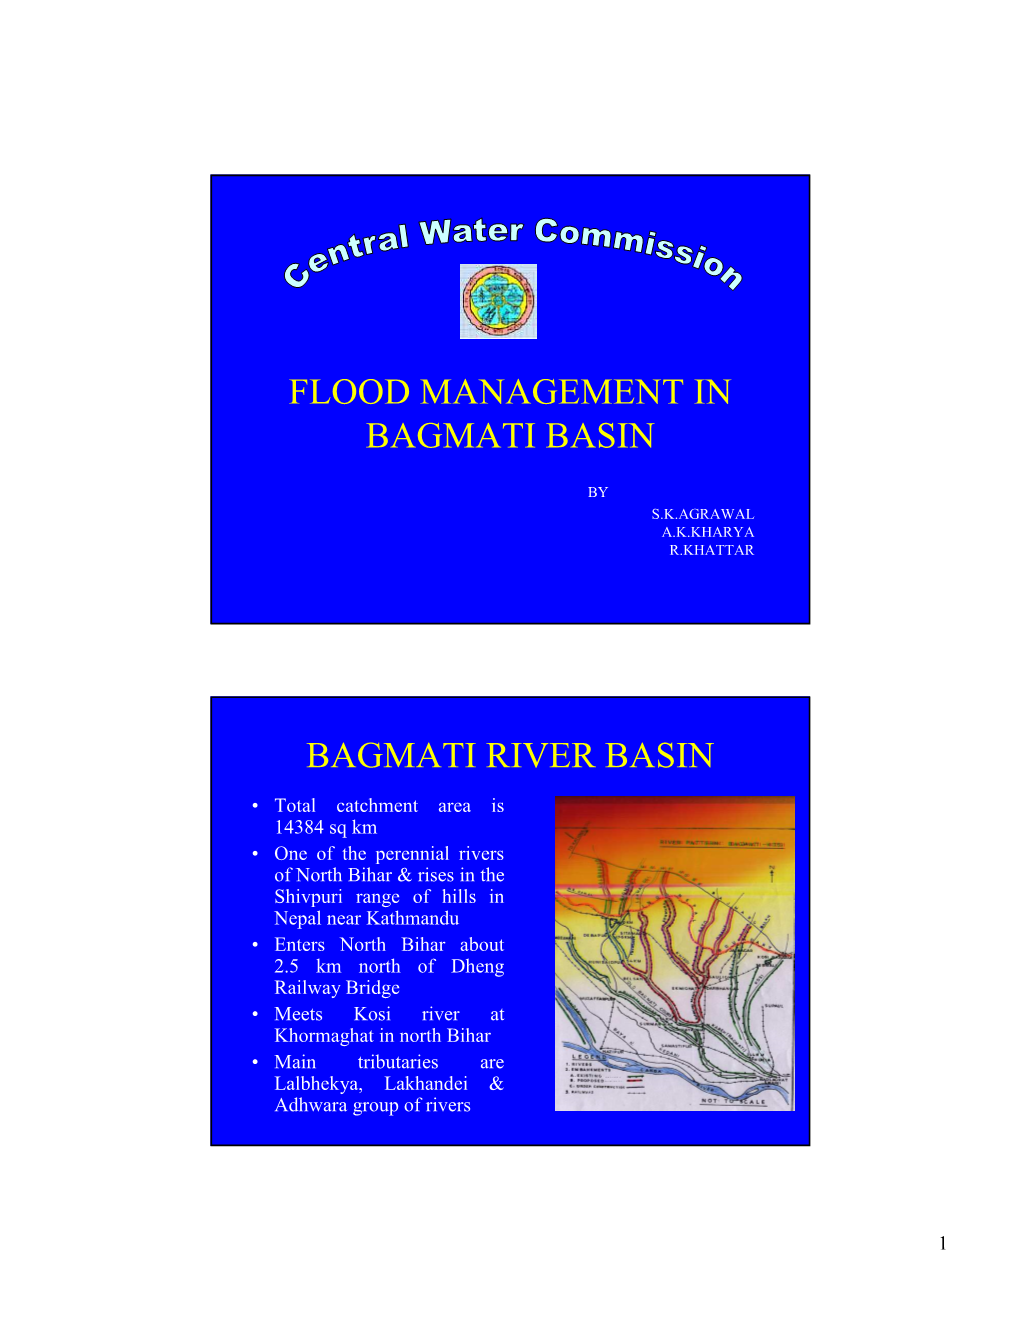 Flood Management in Bagmati Basin Bagmati River Basin